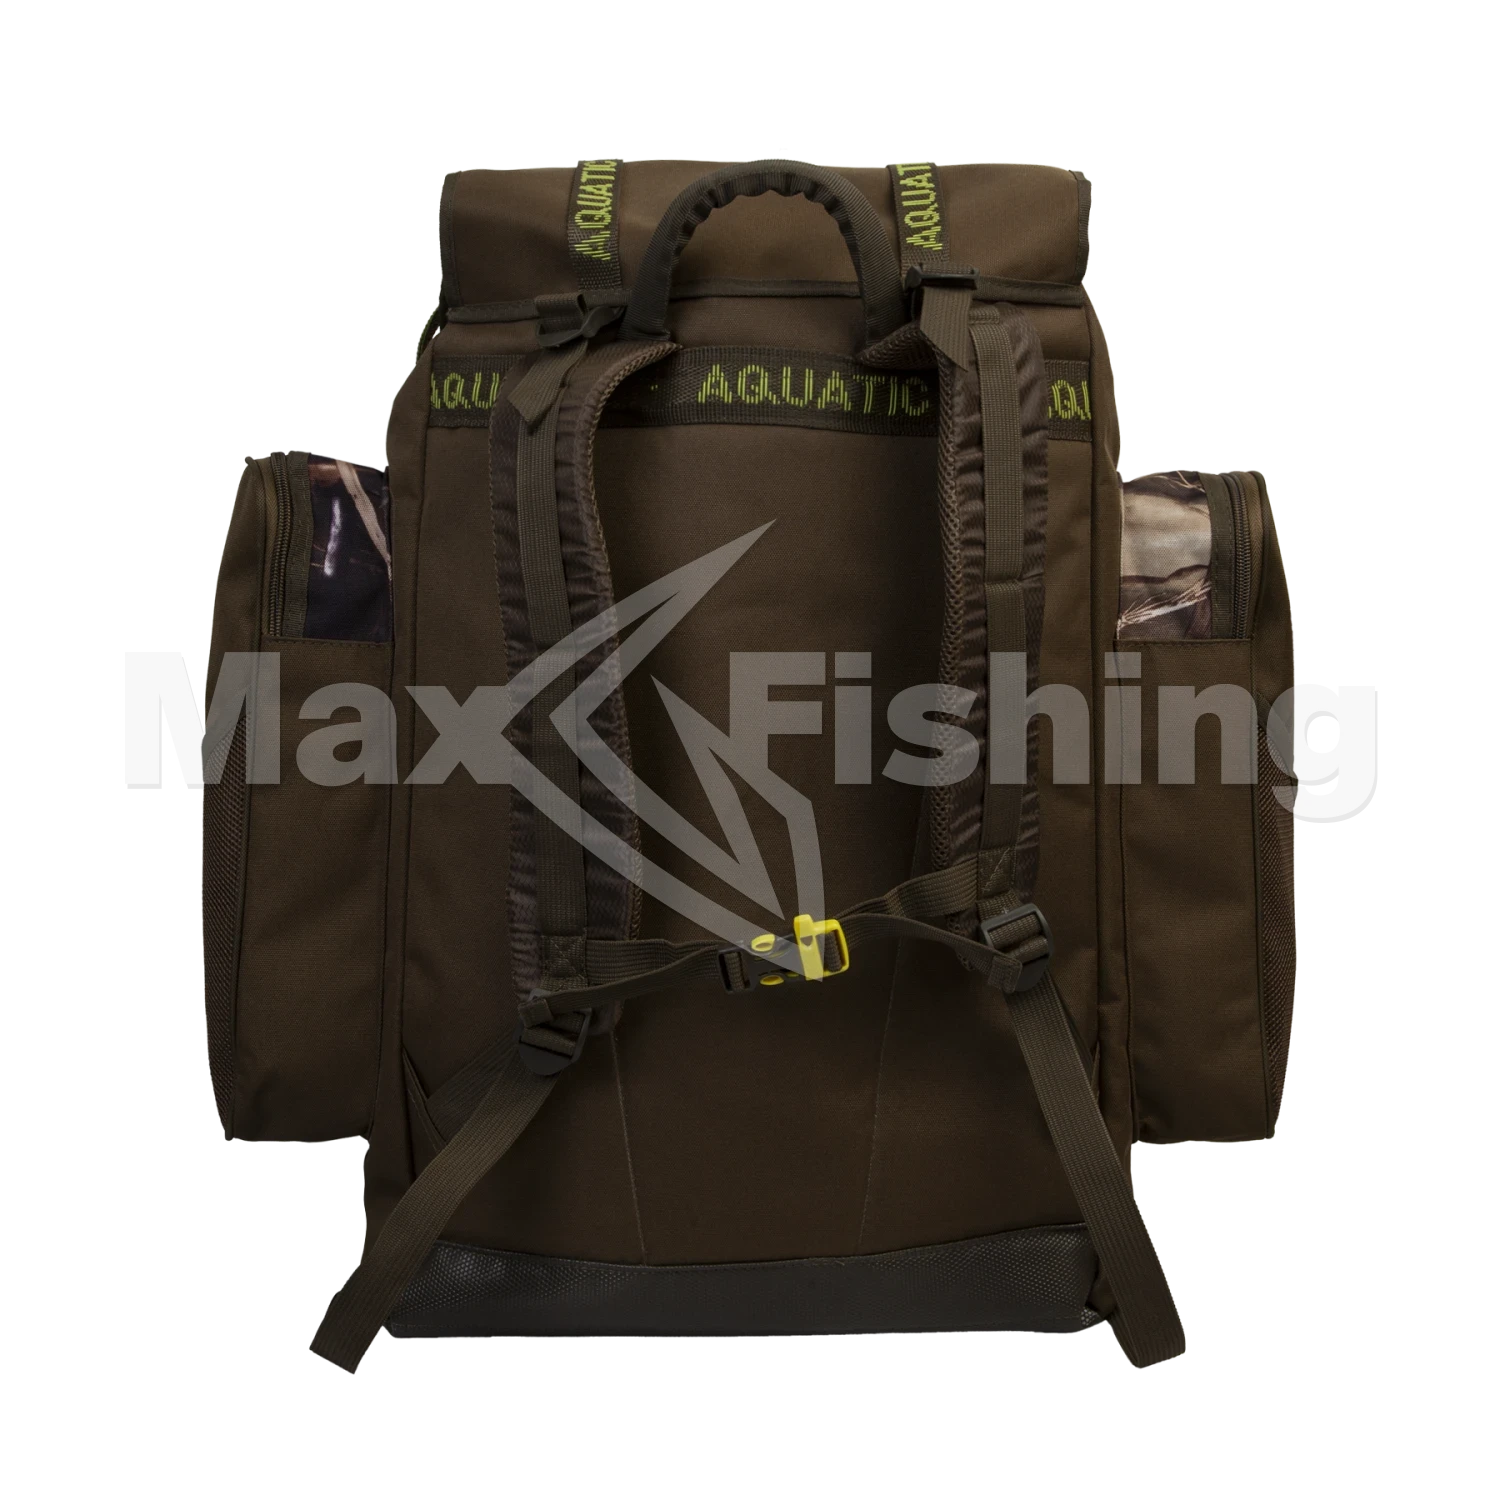 Рюкзак рыболовный Aquatic Р-60